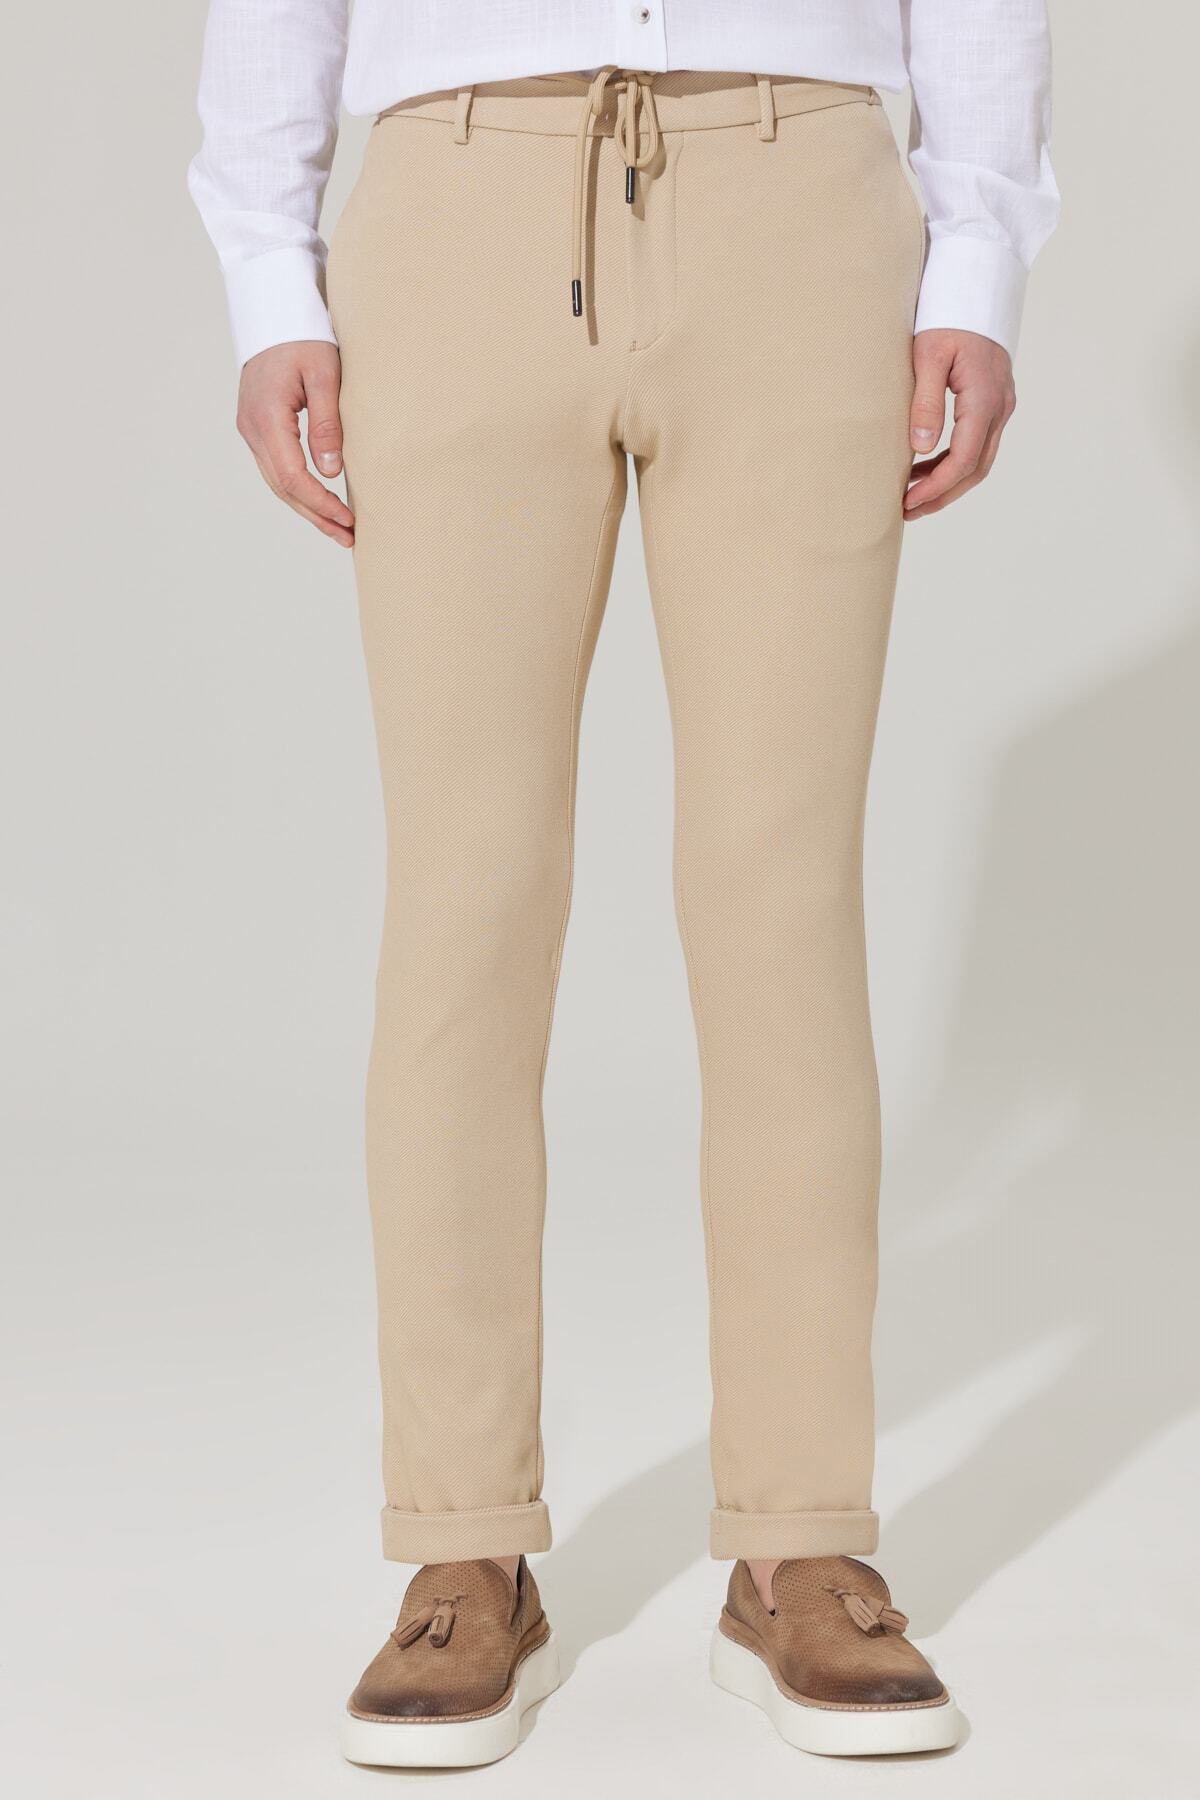 Levně ALTINYILDIZ CLASSICS Men's Beige Slim Fit Slim Fit Diagonal Patterned Elastic Tie Waist Jogger Pants